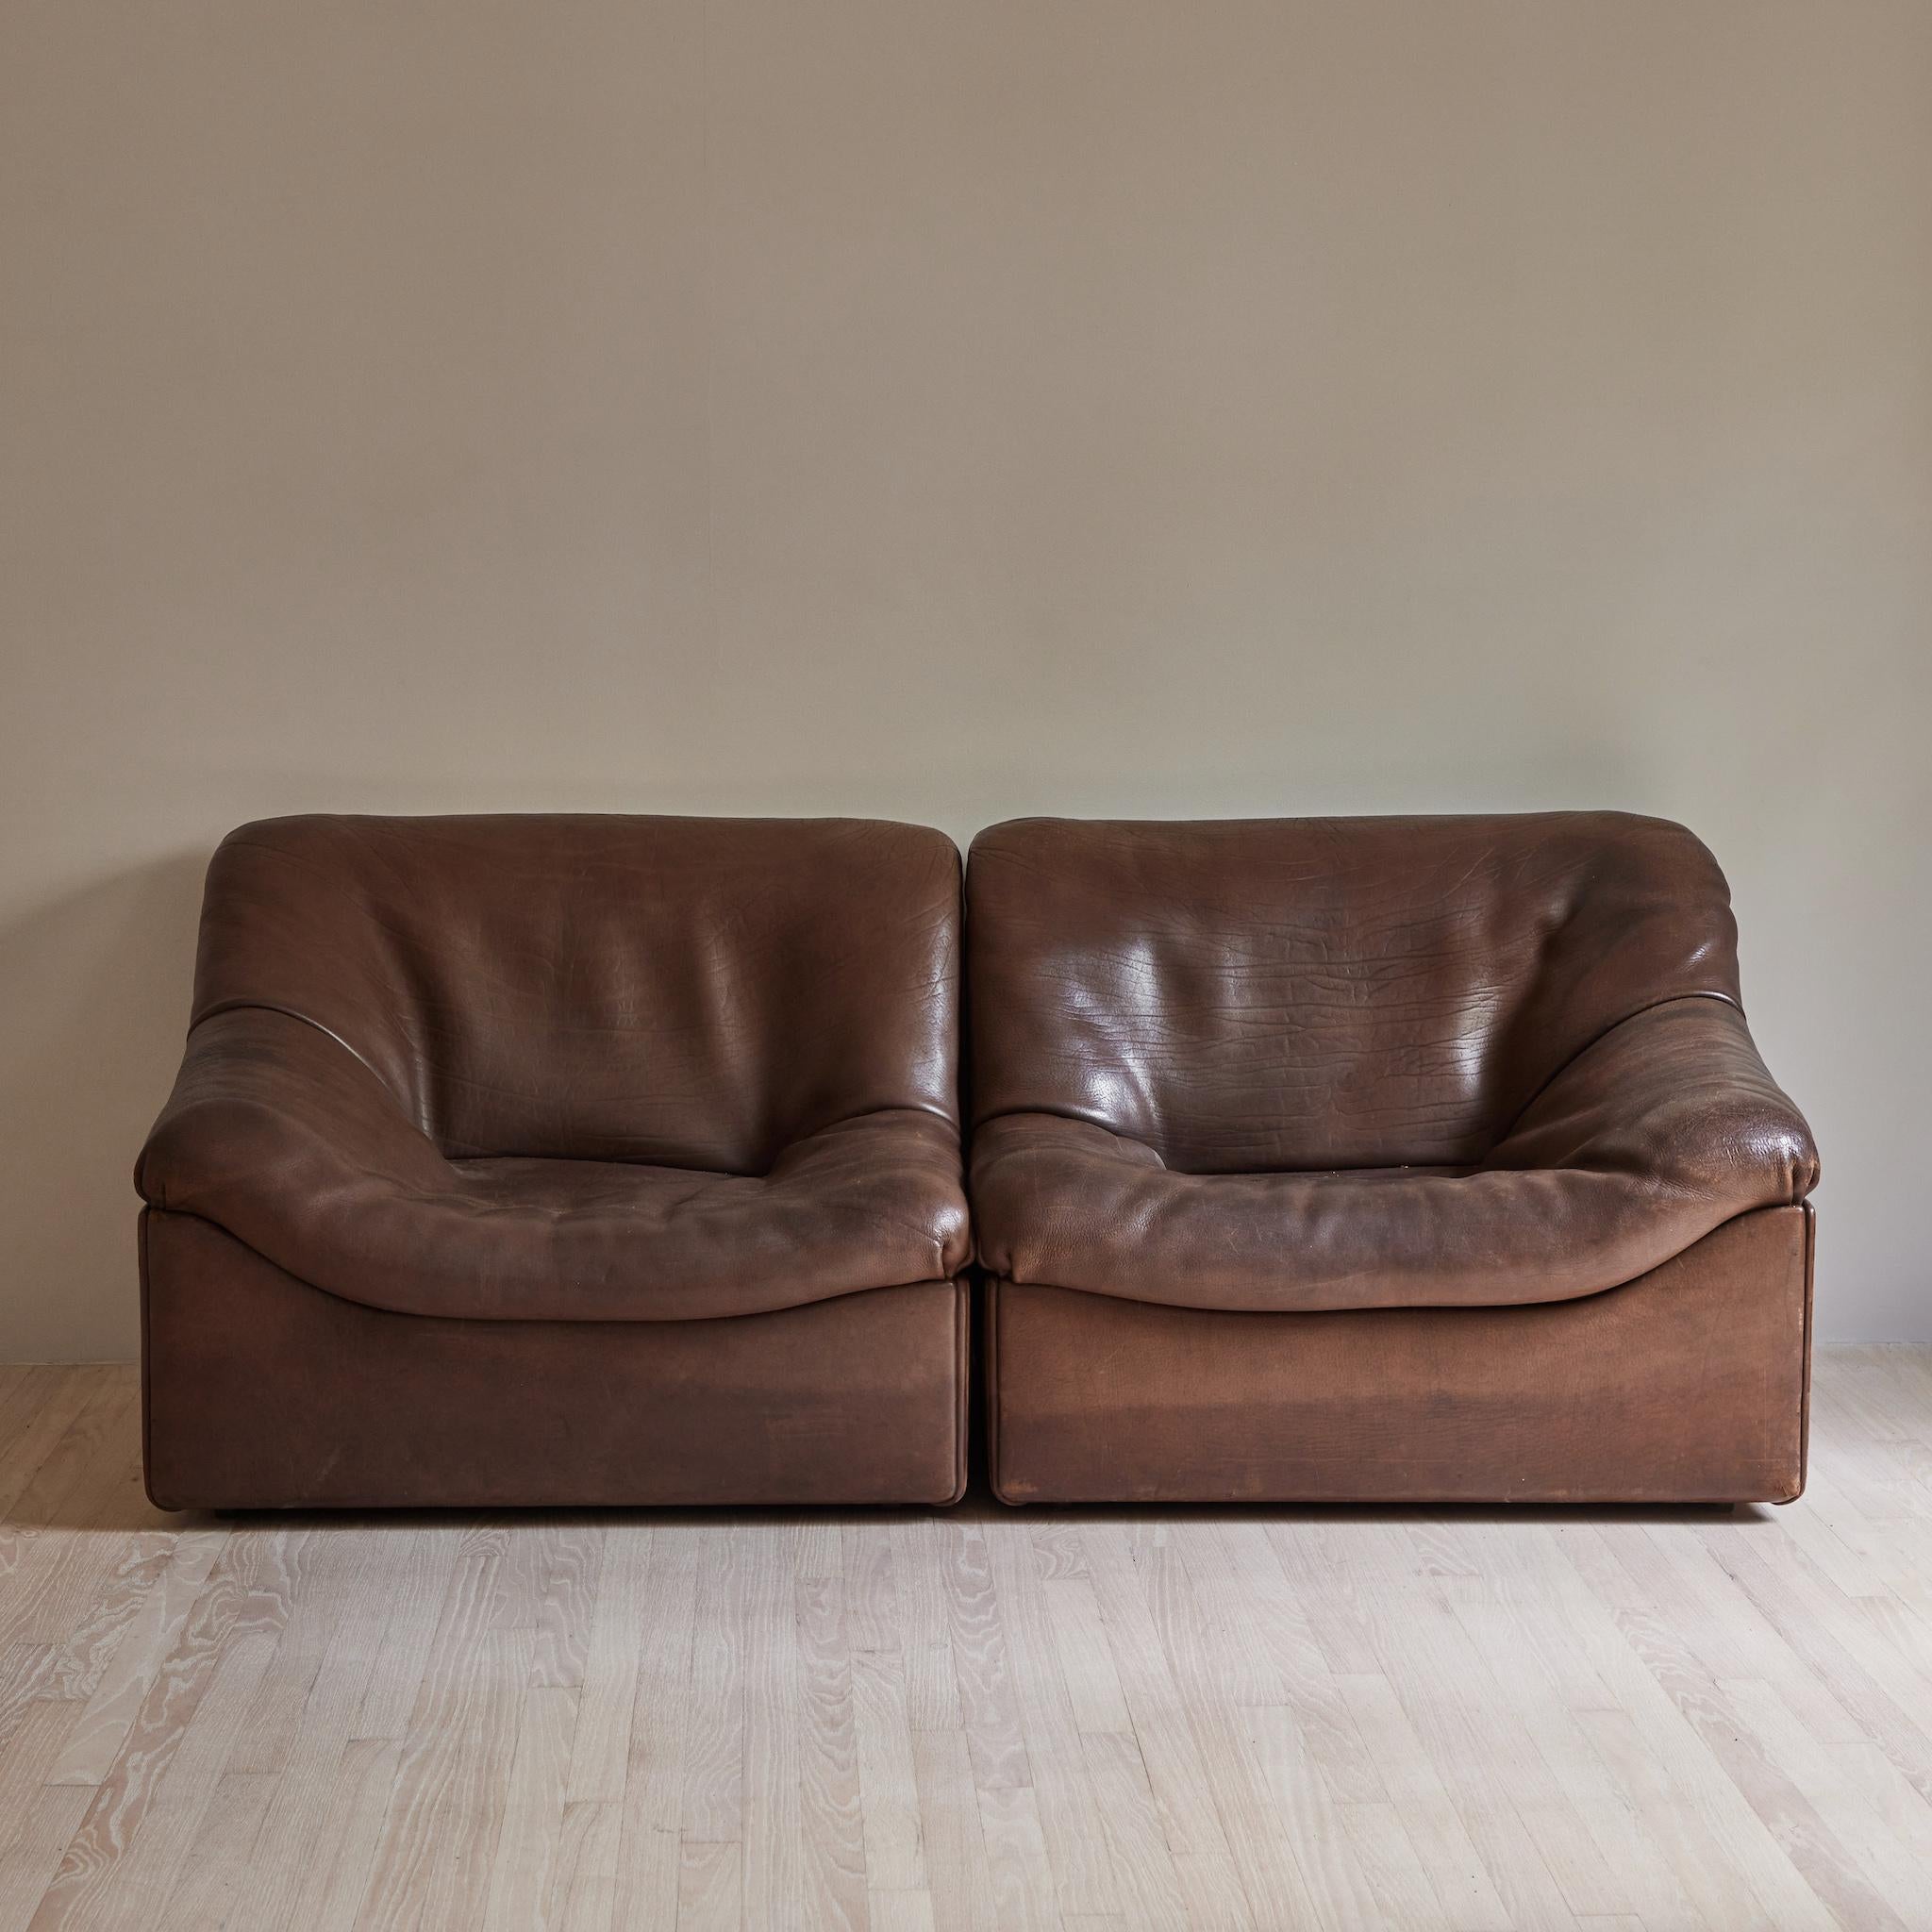 Late 20th Century Leather Sofa